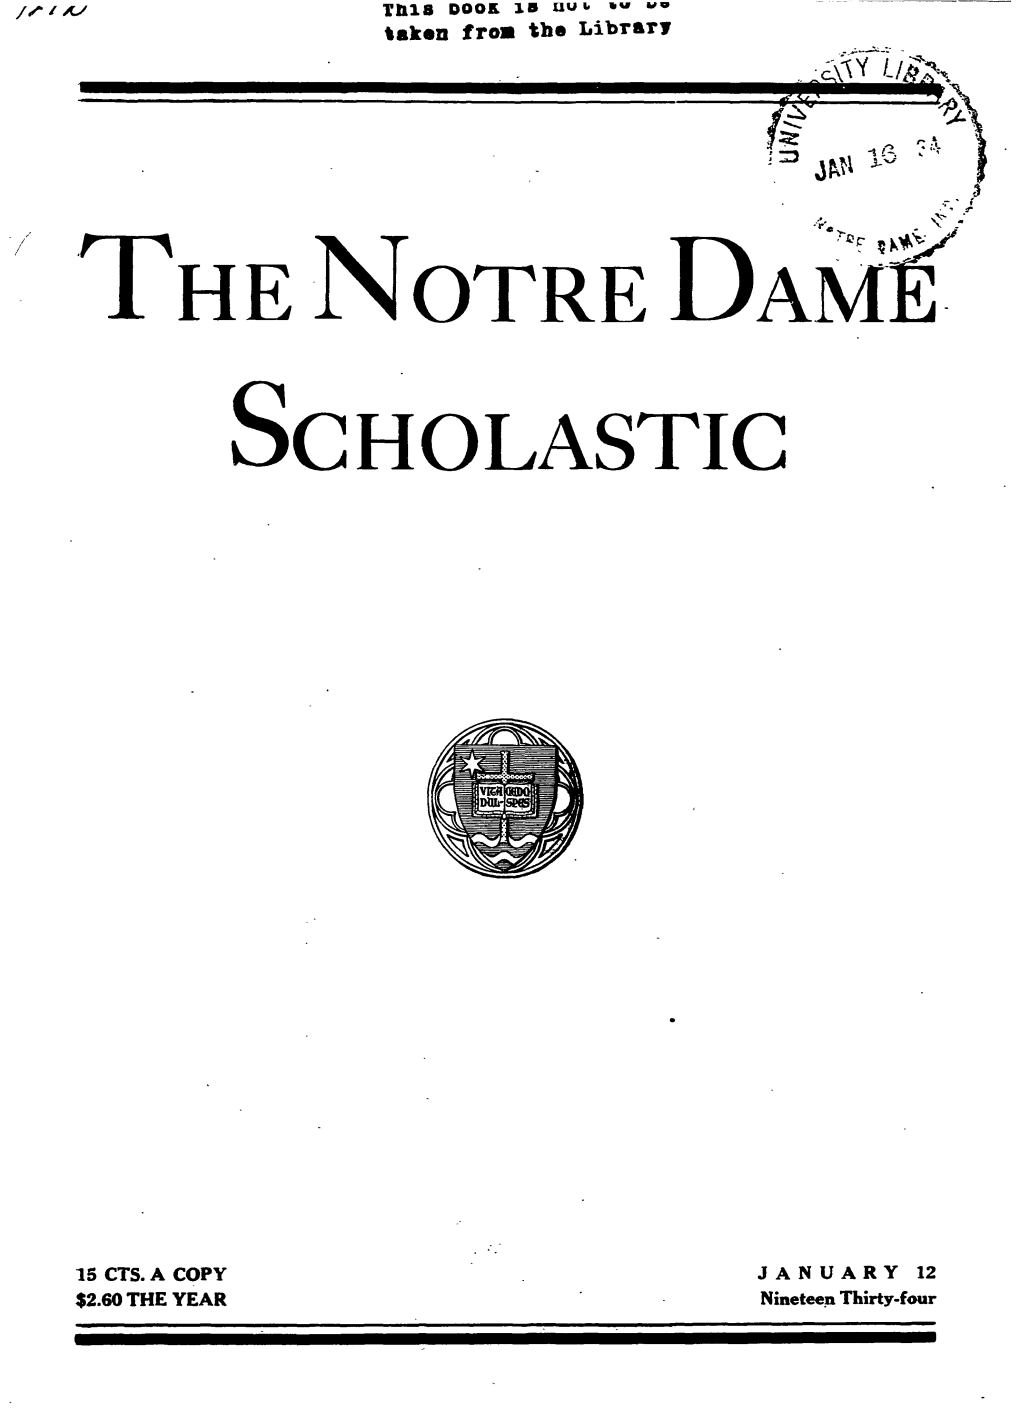 Notre Dame Scholastic, Vol. 67, No. 13